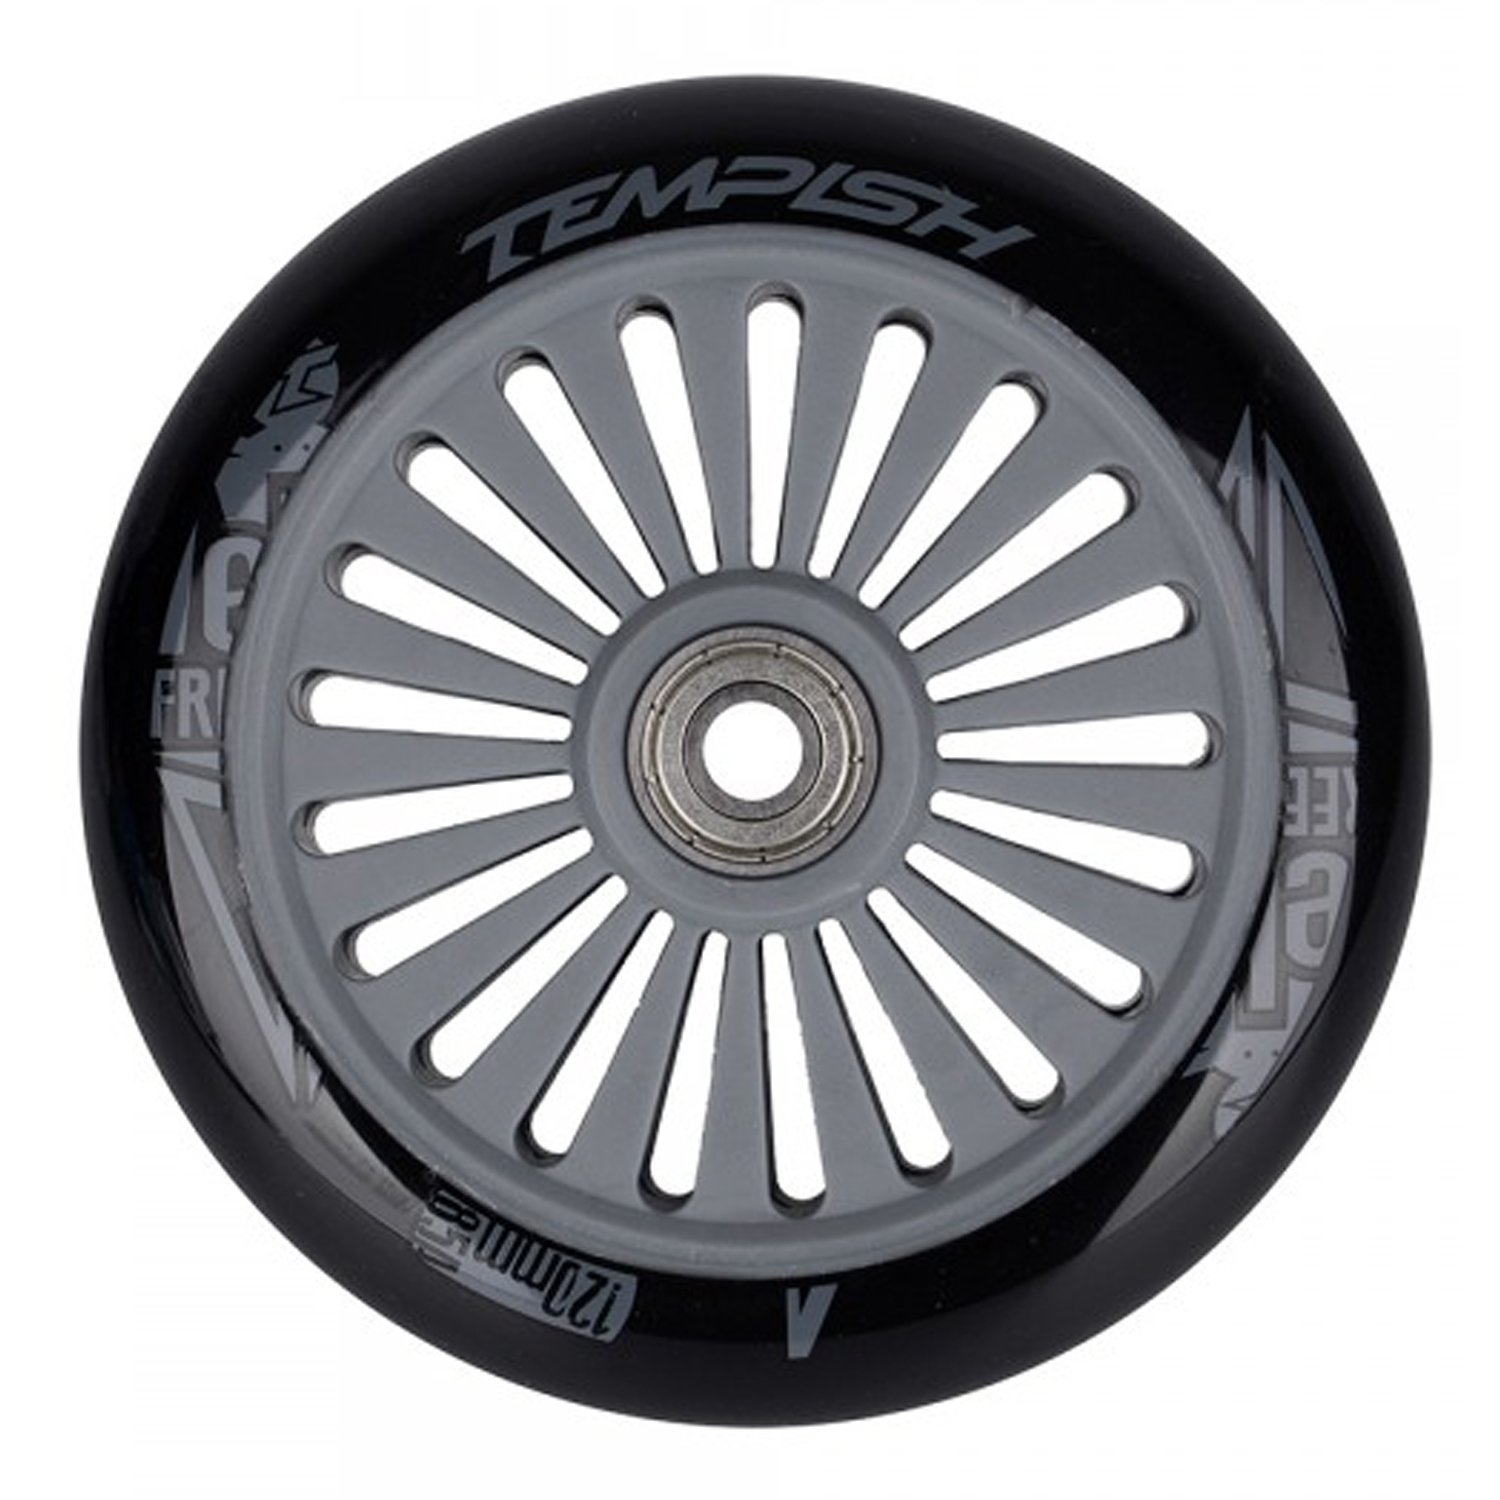 Колесо для самоката Tempish PU, 85A, 120x24 mm, с подшипником, черный, 105100008 колесо для самоката tempish 2018 pu 200x30 mm 87a